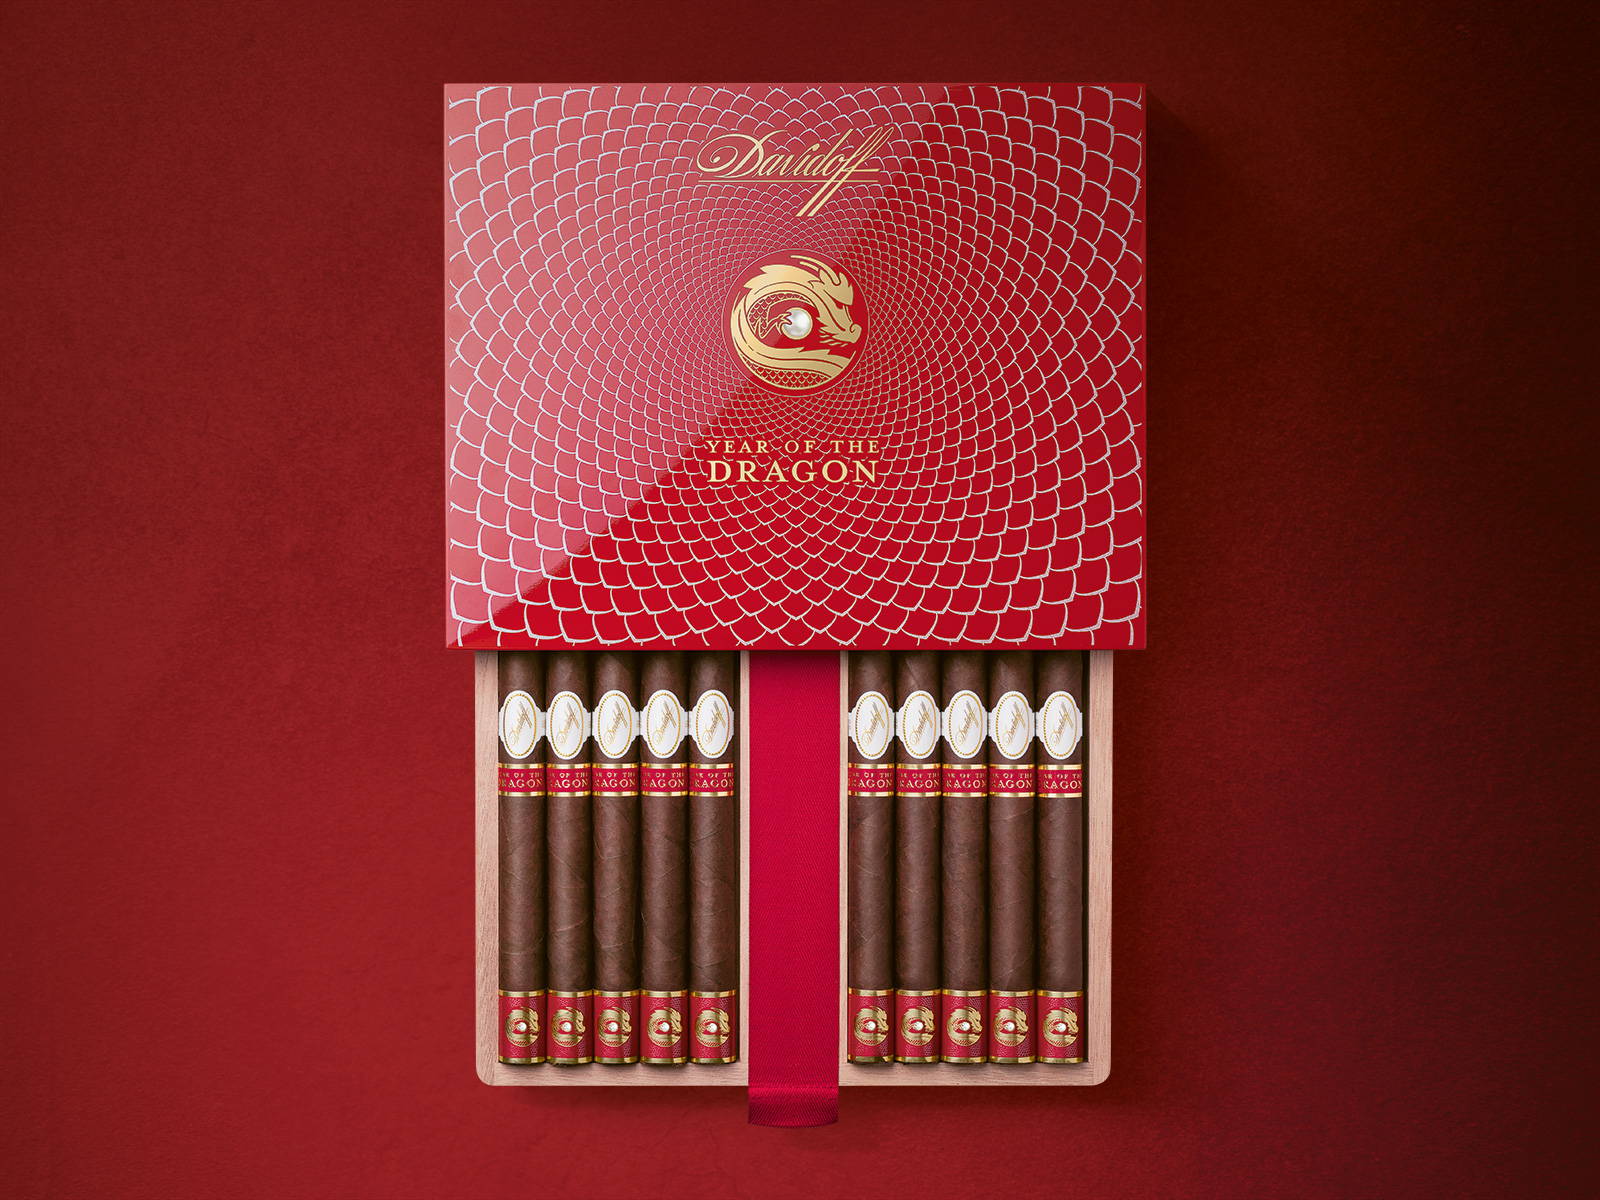 Die Davidoff Year of the Dragon Limited Edition Double-Corona-Zigarren in ihrer geöffneten Kiste.